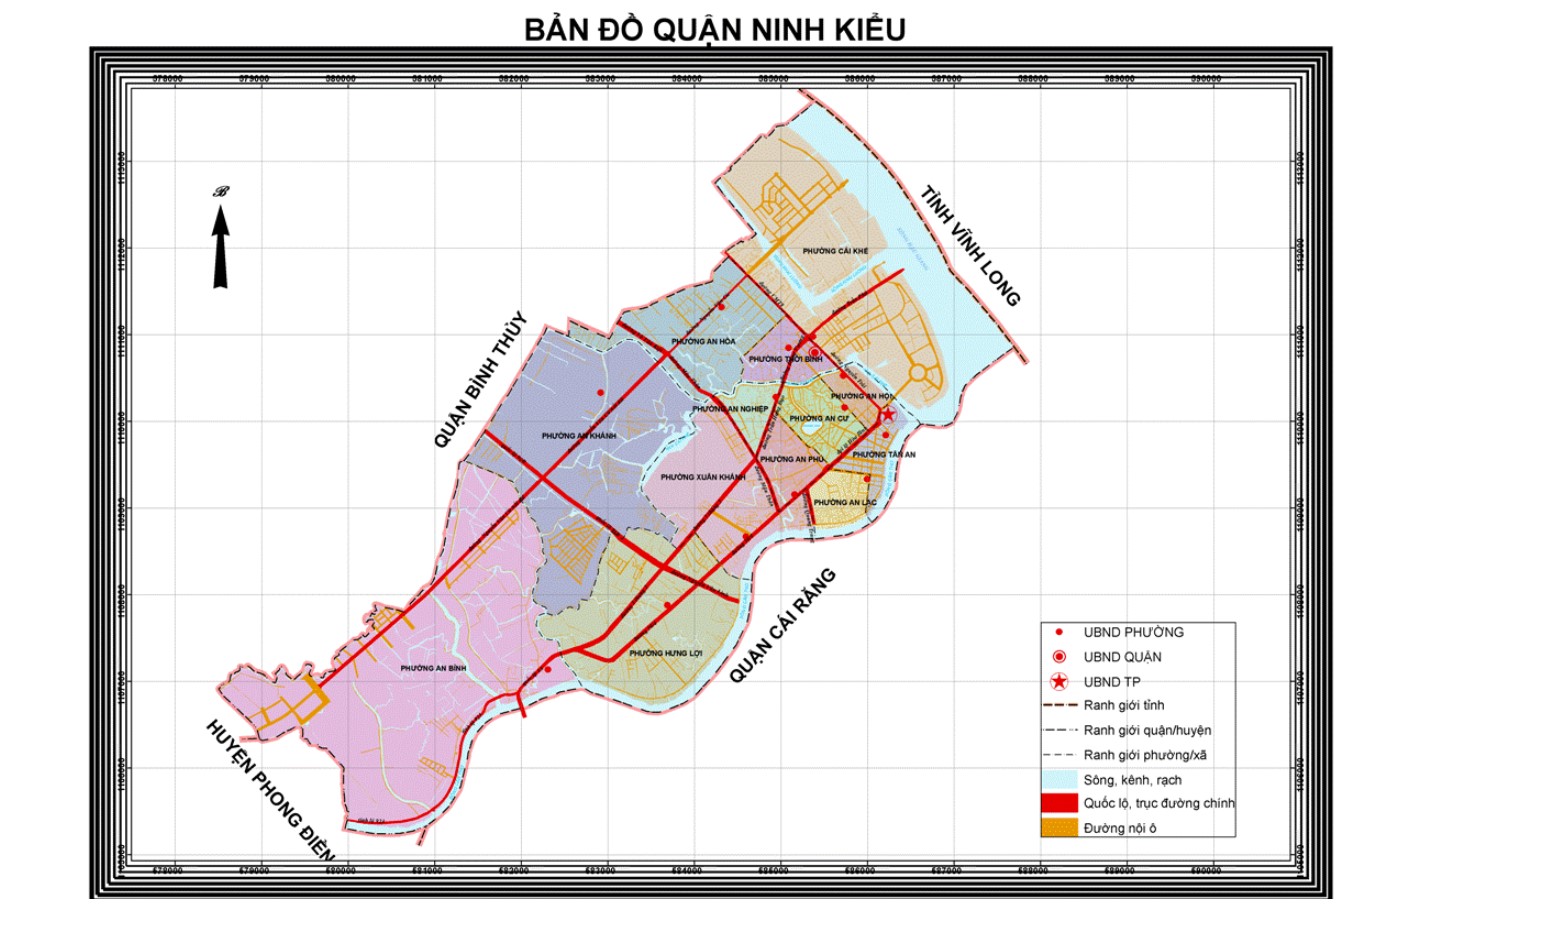 Bản đồ quận Ninh Kiều 2024: Bản đồ quận Ninh Kiều đến năm 2024 mang đến cho bạn cái nhìn đầy đủ nhất về sự phát triển của khu vực này. Hệ thống giao thông hoàn thiện, đường phố được nâng cấp và cải tạo, cùng với sự phát triển của các dịch vụ tiện ích - Quận Ninh Kiều không ngừng đổi mới và phát triển!